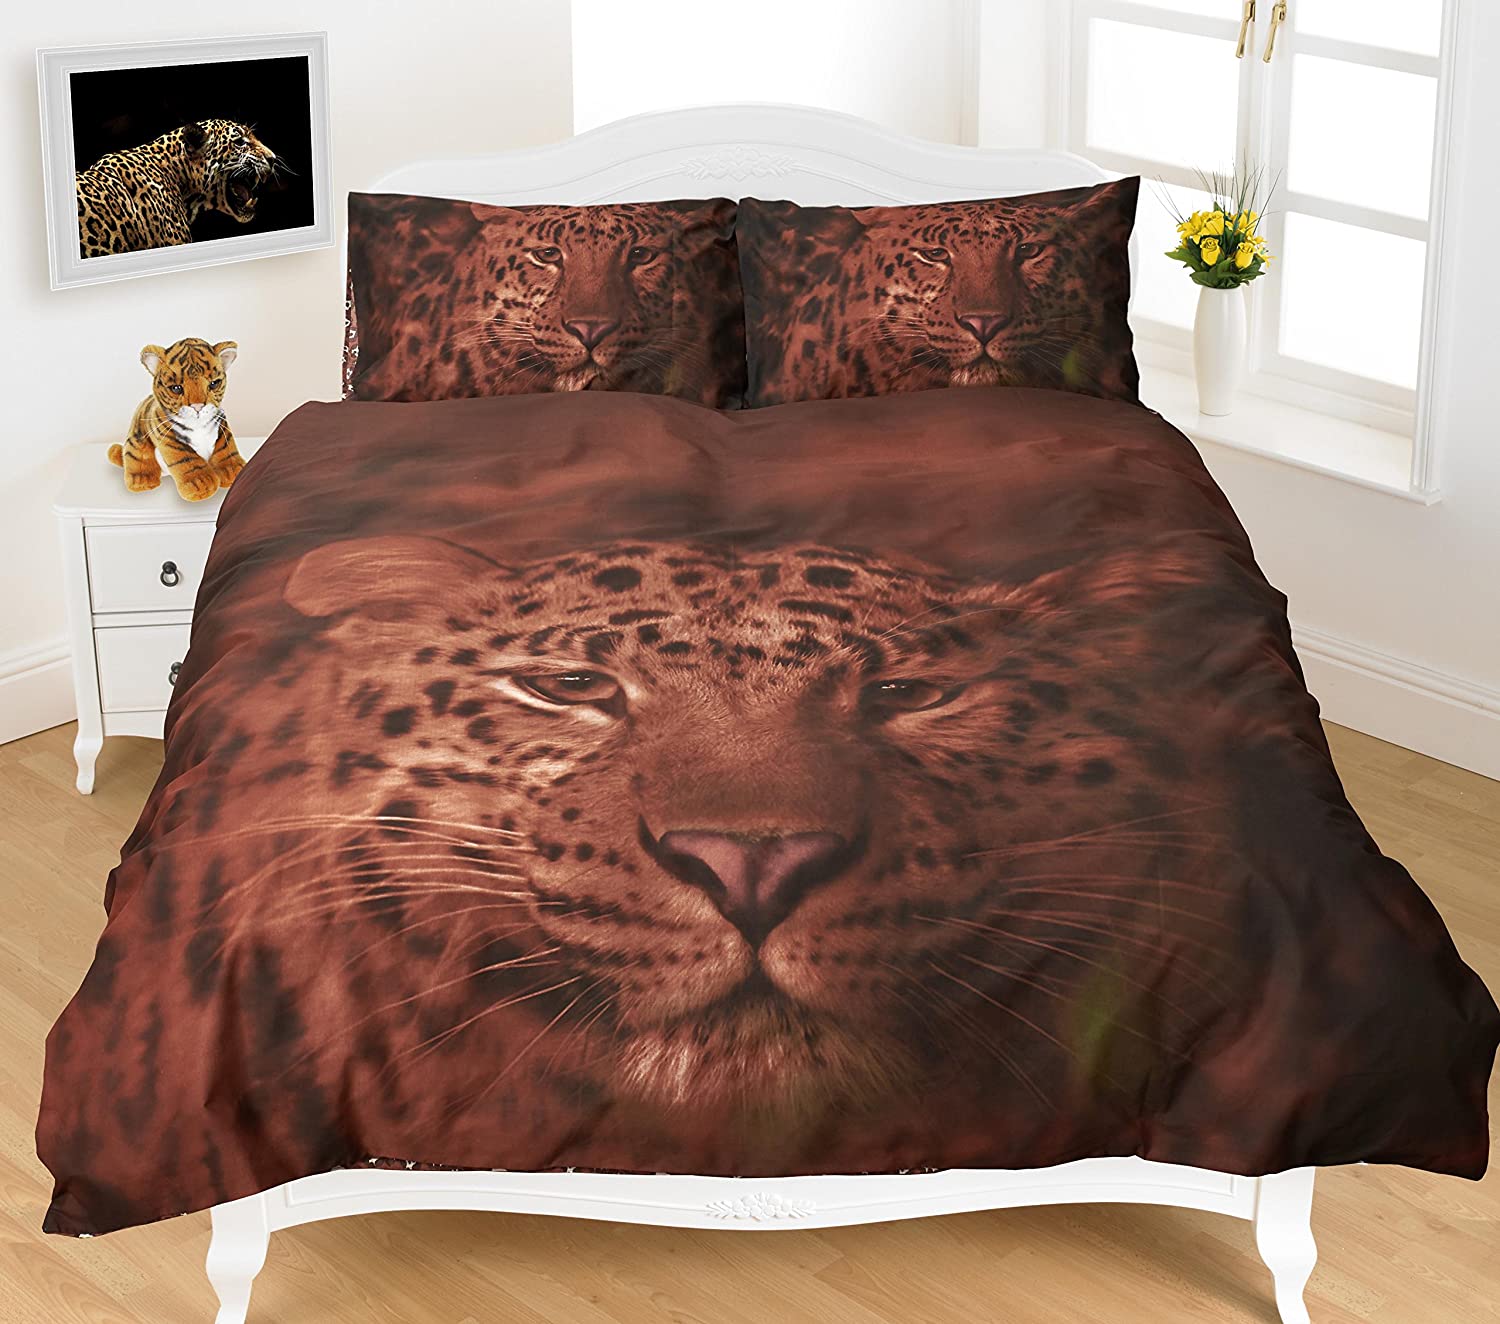 Leopard Print 3D Duvet Cover Set with Pillowcases - Poly Cotton 3D Bedding